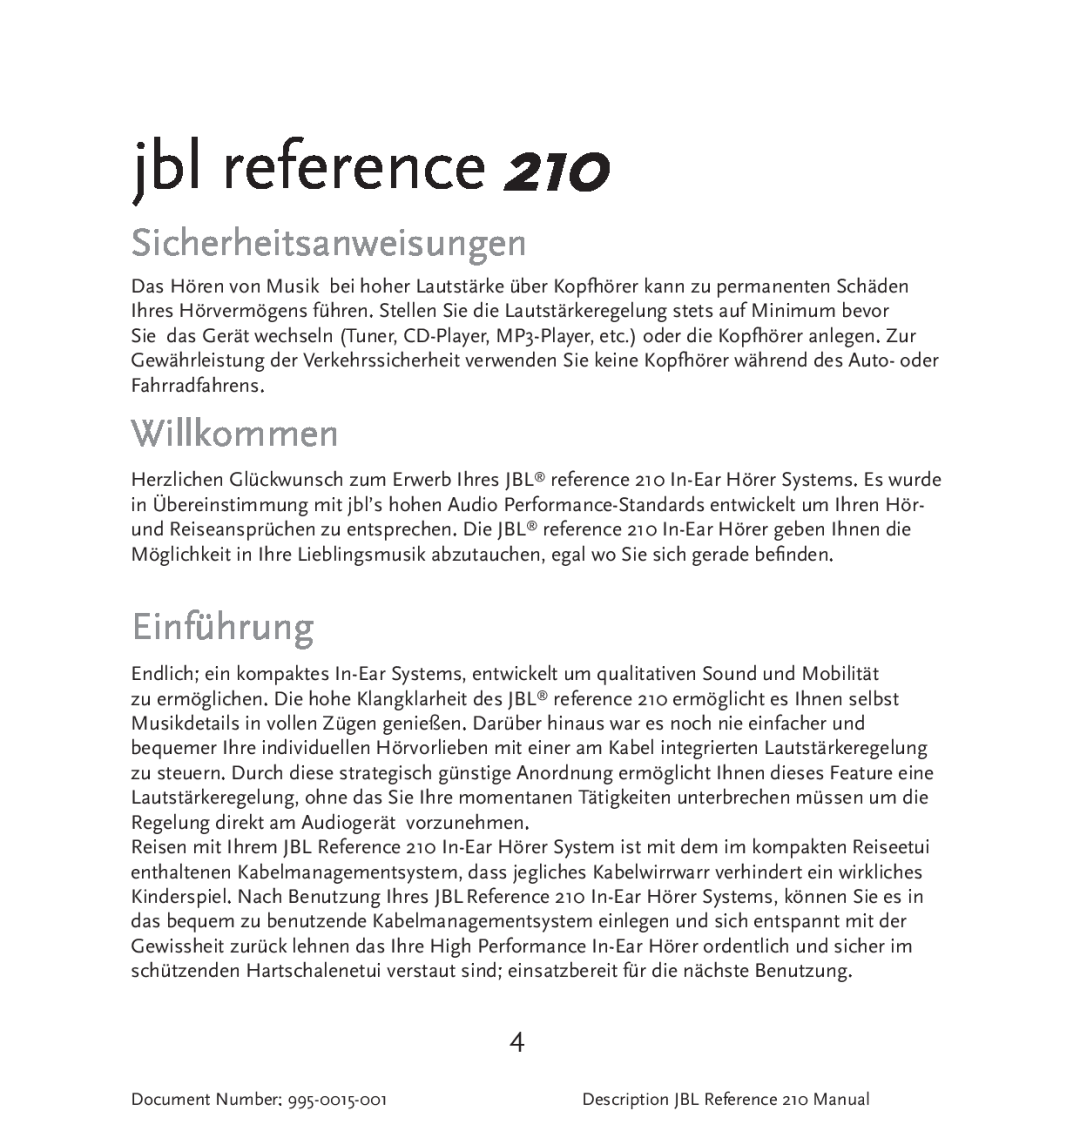 JBL 210 manual Sicherheitsanweisungen, Willkommen, Einführung, jbl reference, Document Number 